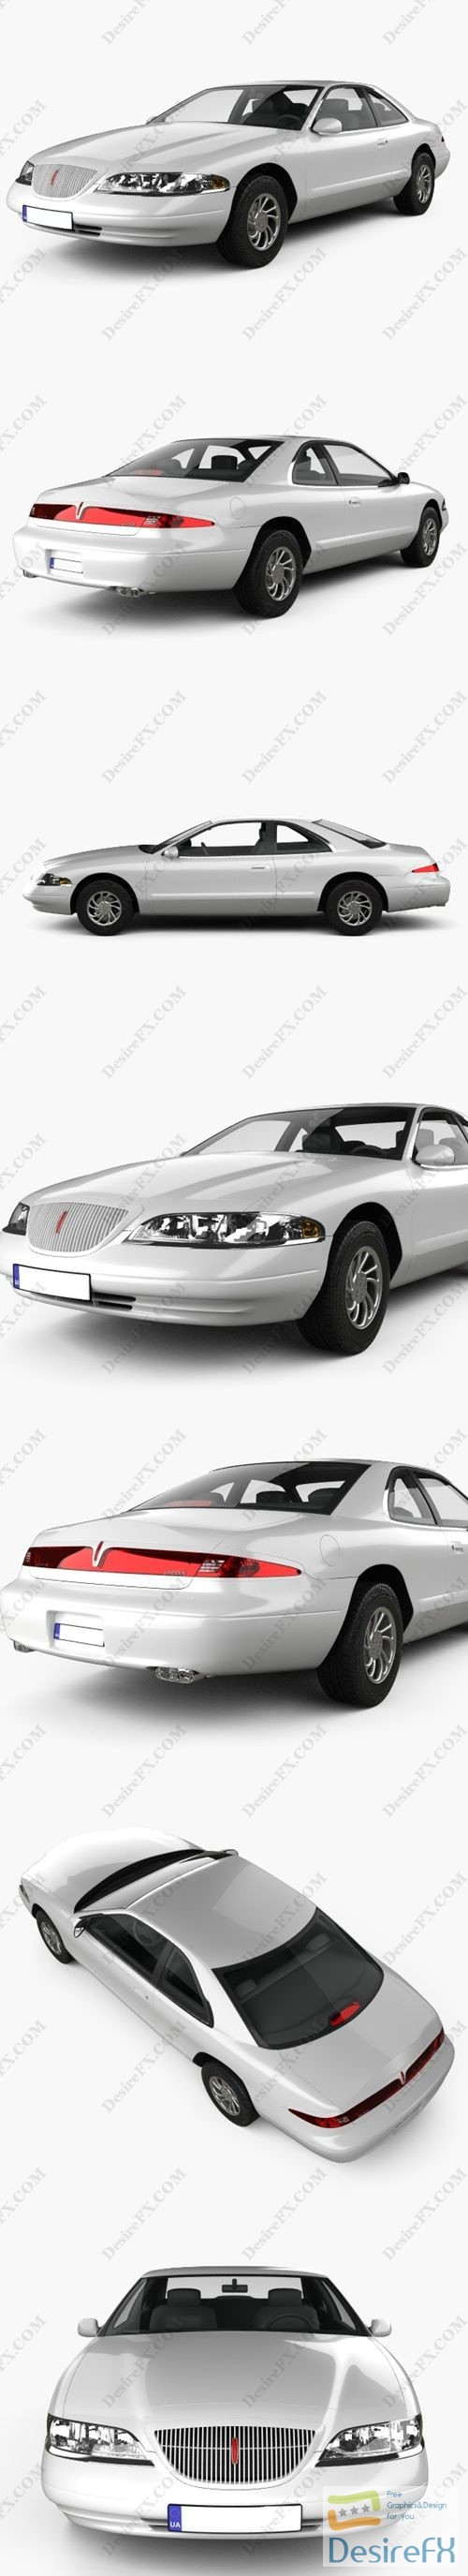 Lincoln Mark 1998 3D Model